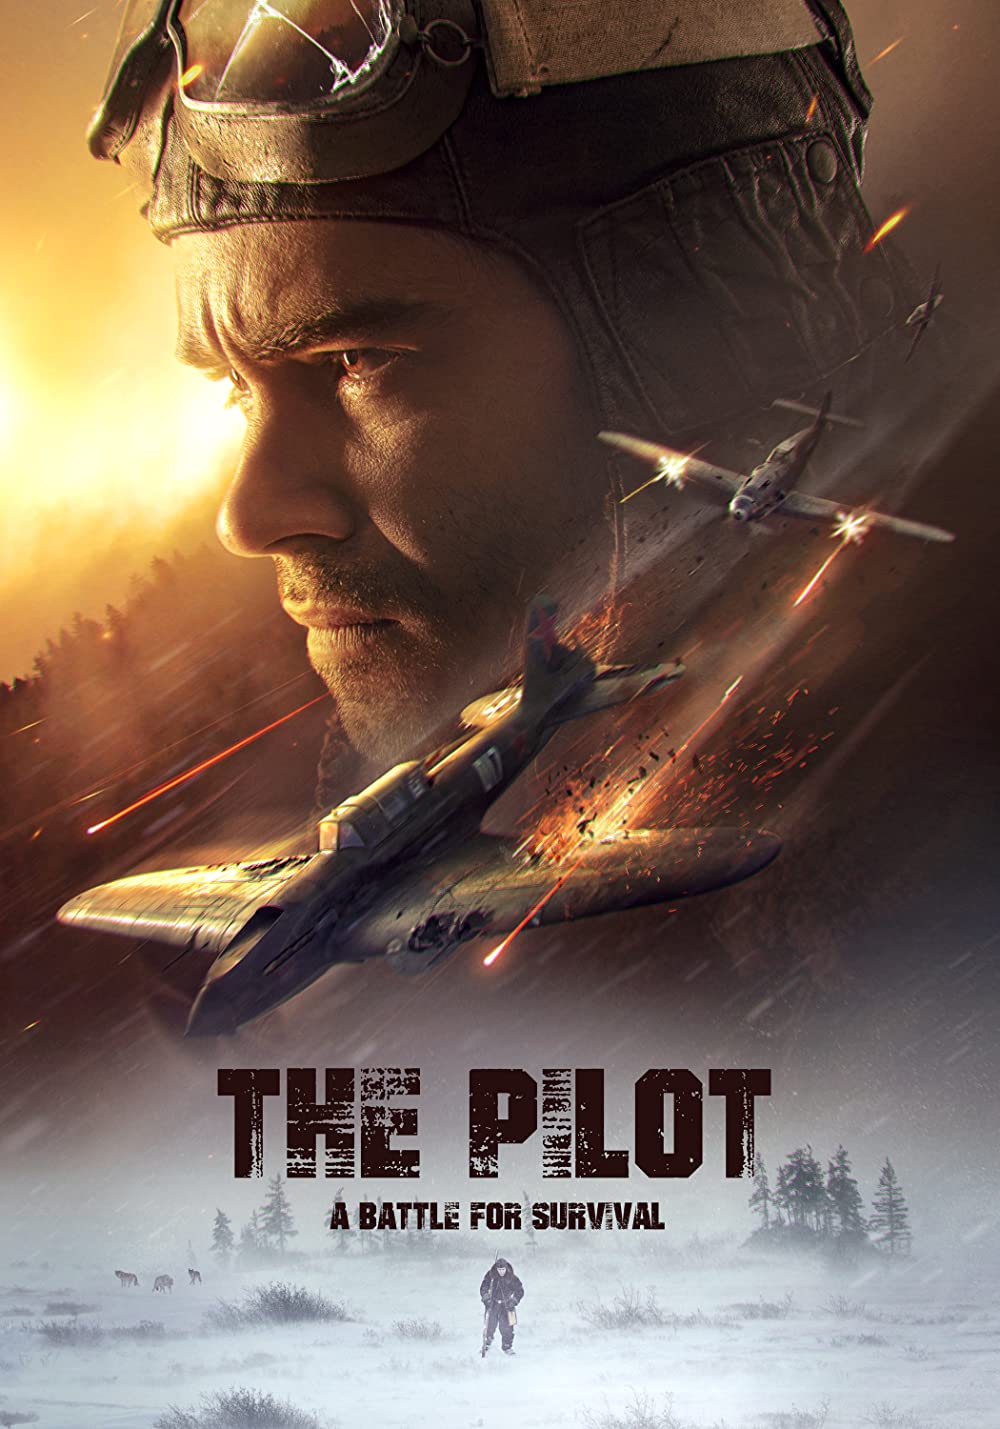  The Pilot. A Battle for Survival / Ljotcik (2021)[WebRip][1080p] = CSFD 68%